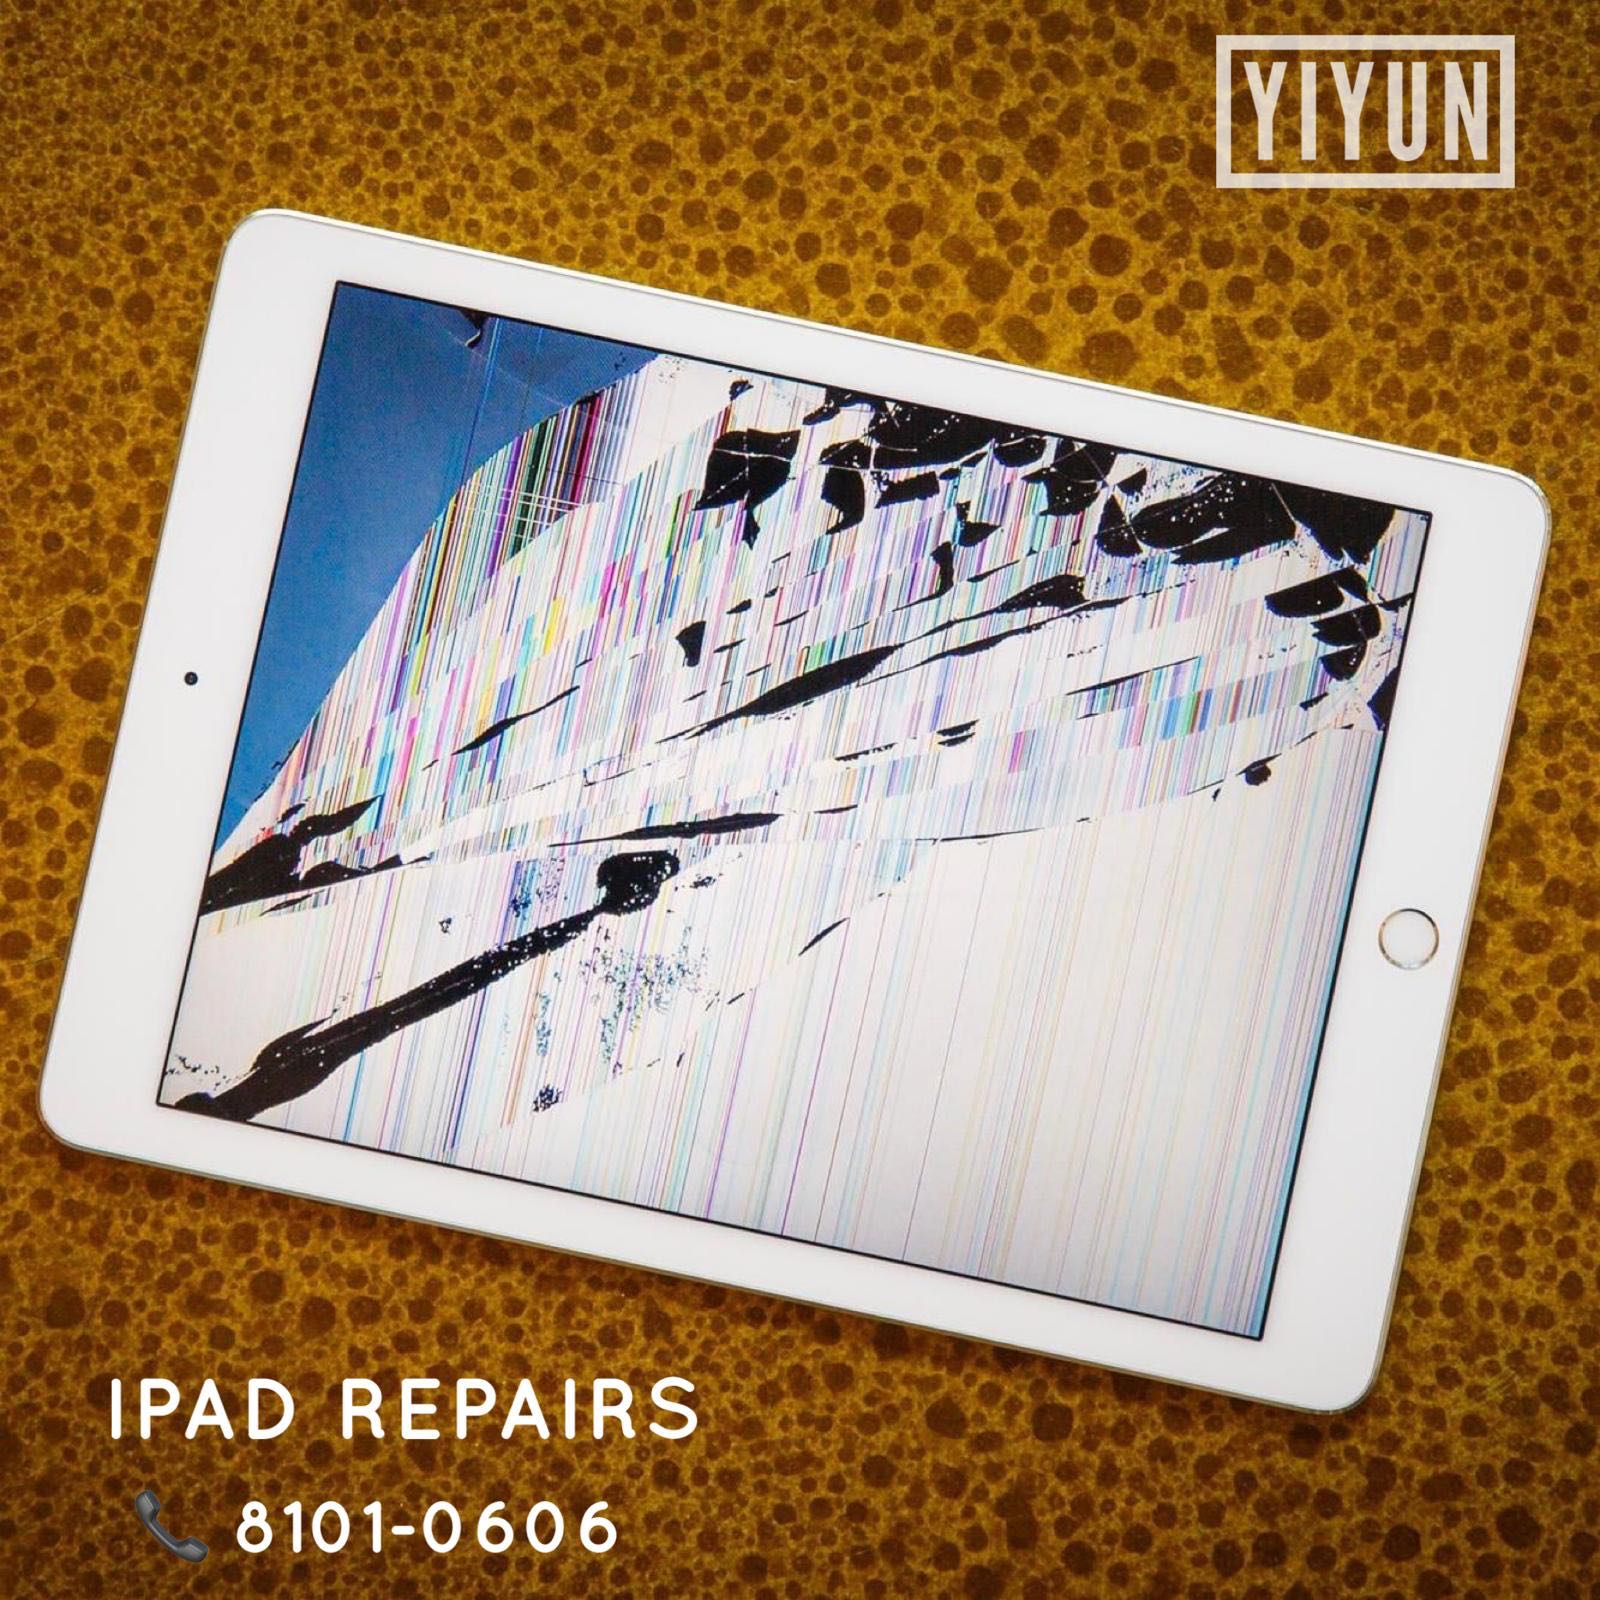 30min iPad Repair, iPad Crack Screen, iPad LCD, iPad Battery